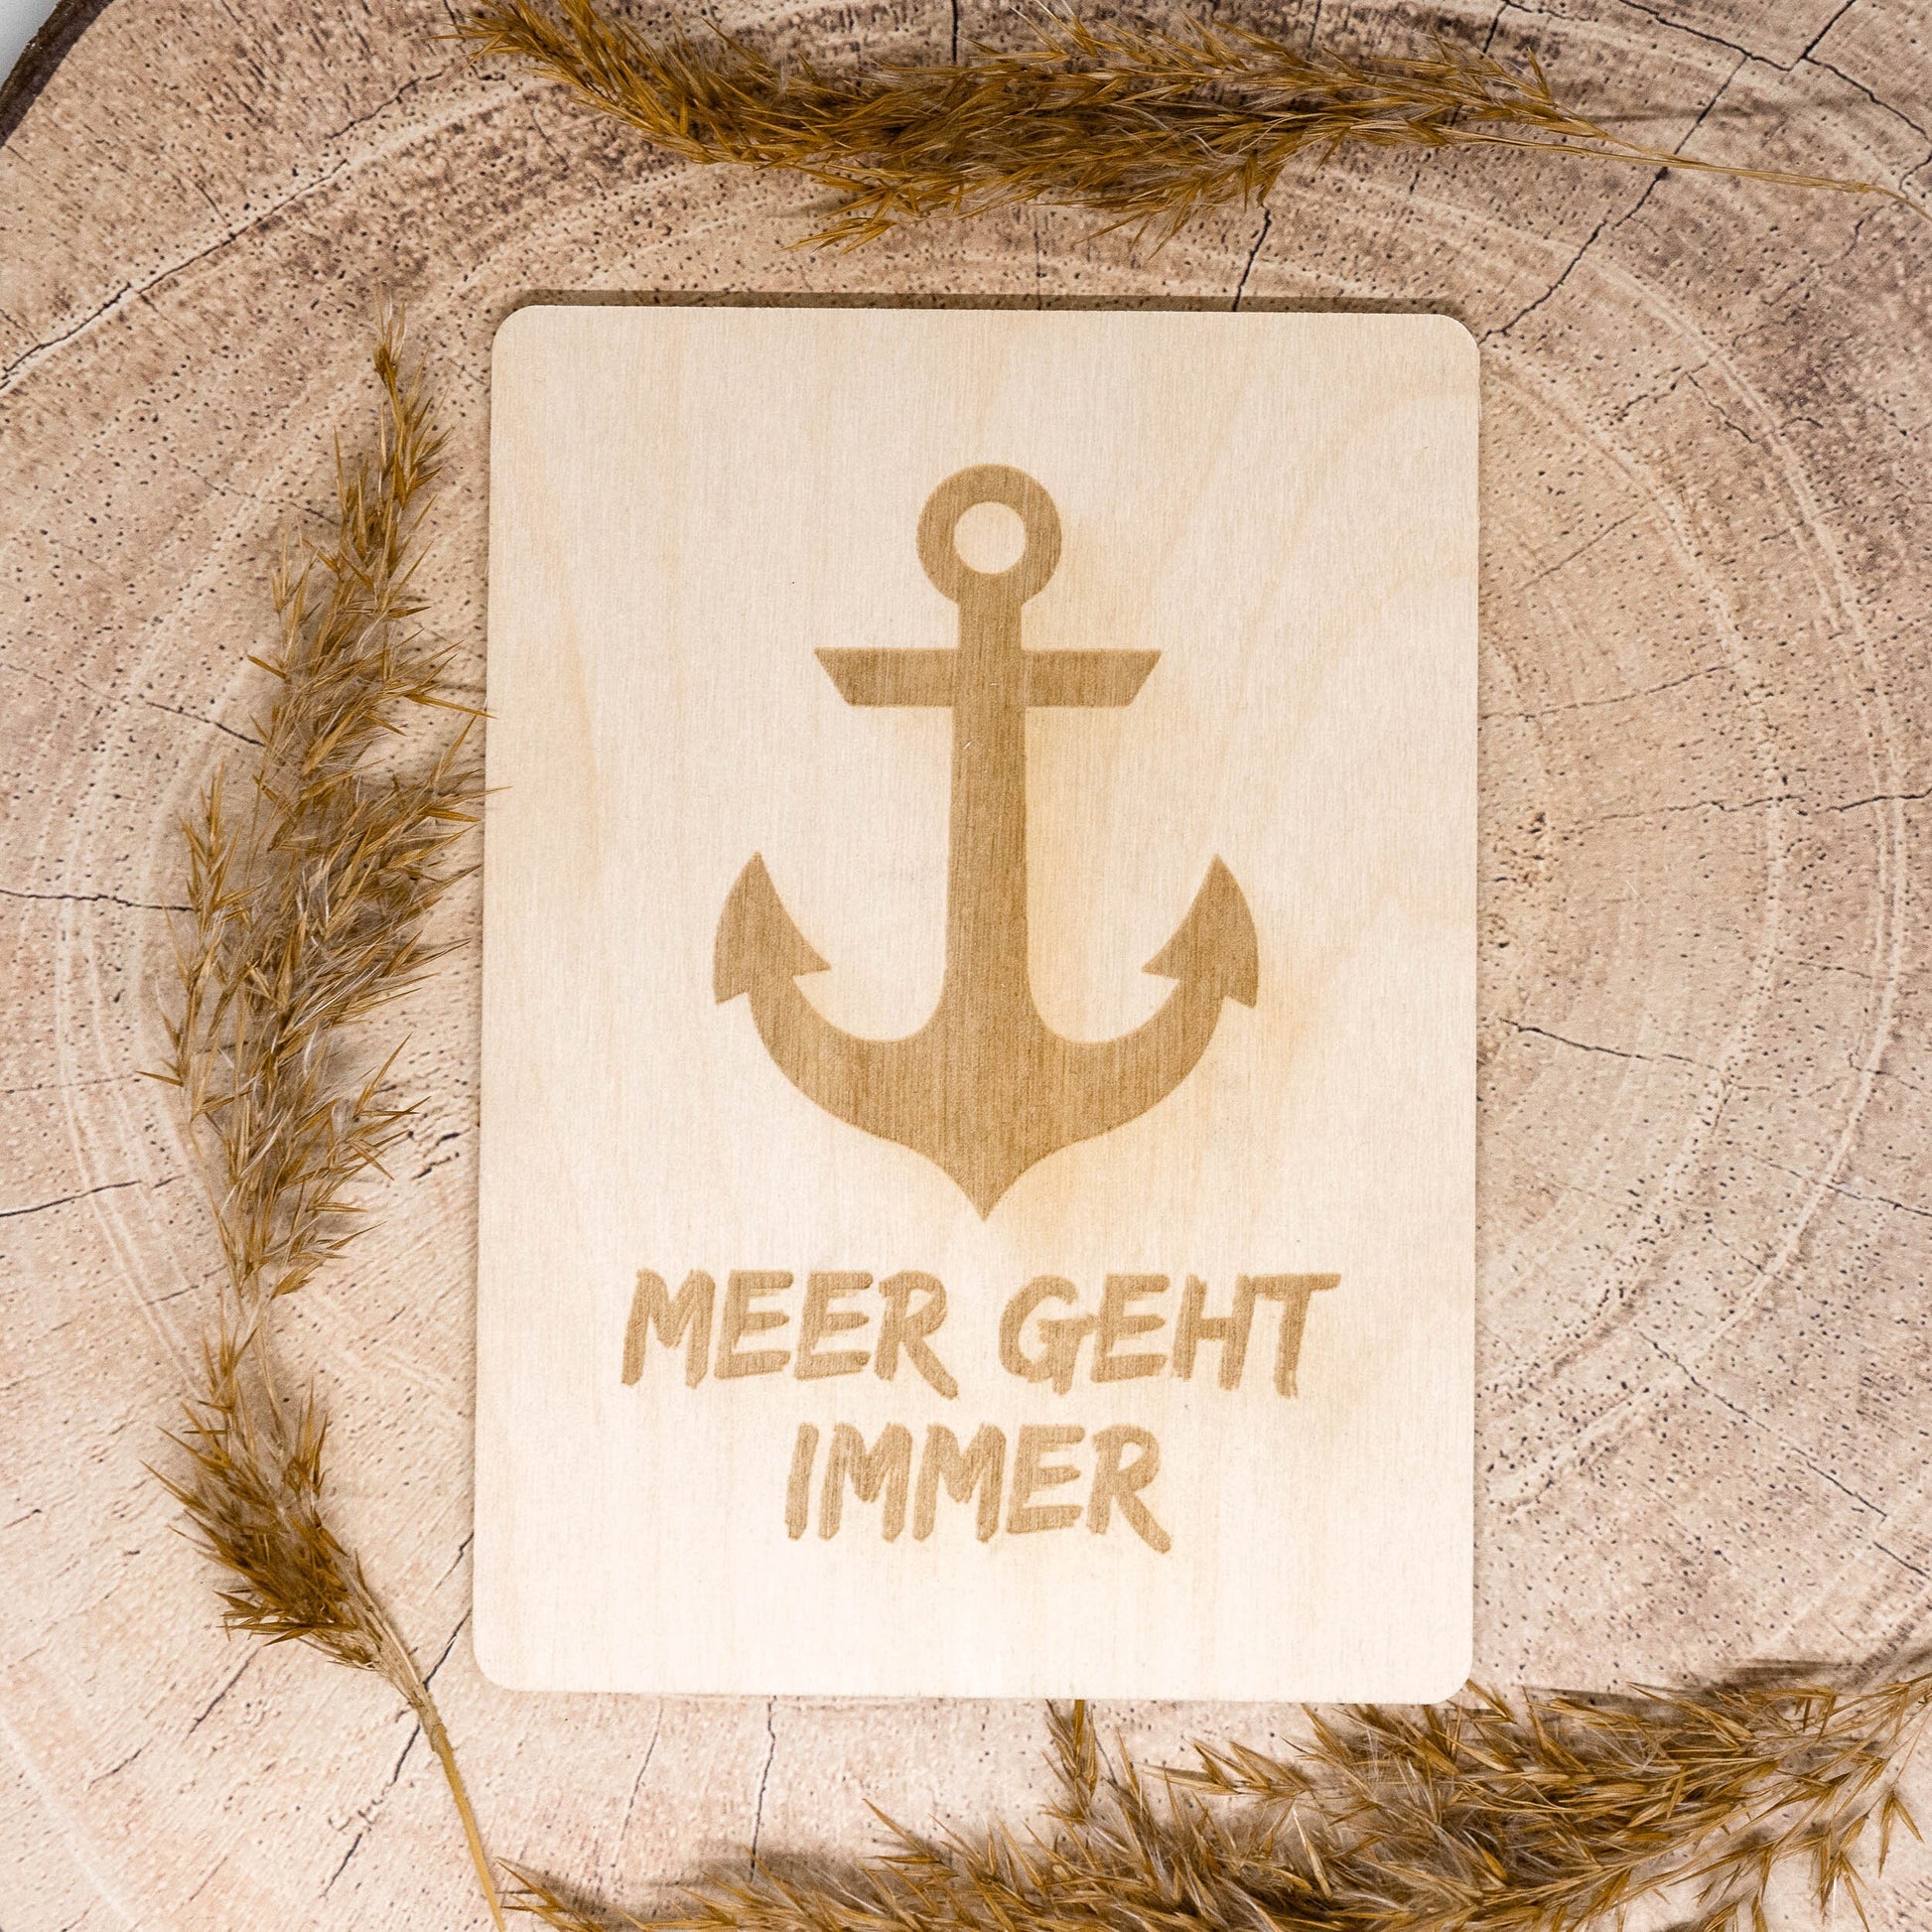 Holzpostkarte • Meer geht immer • maritim • Holzkarte • Postkarte mit maritimem Motiv - Lasergravur